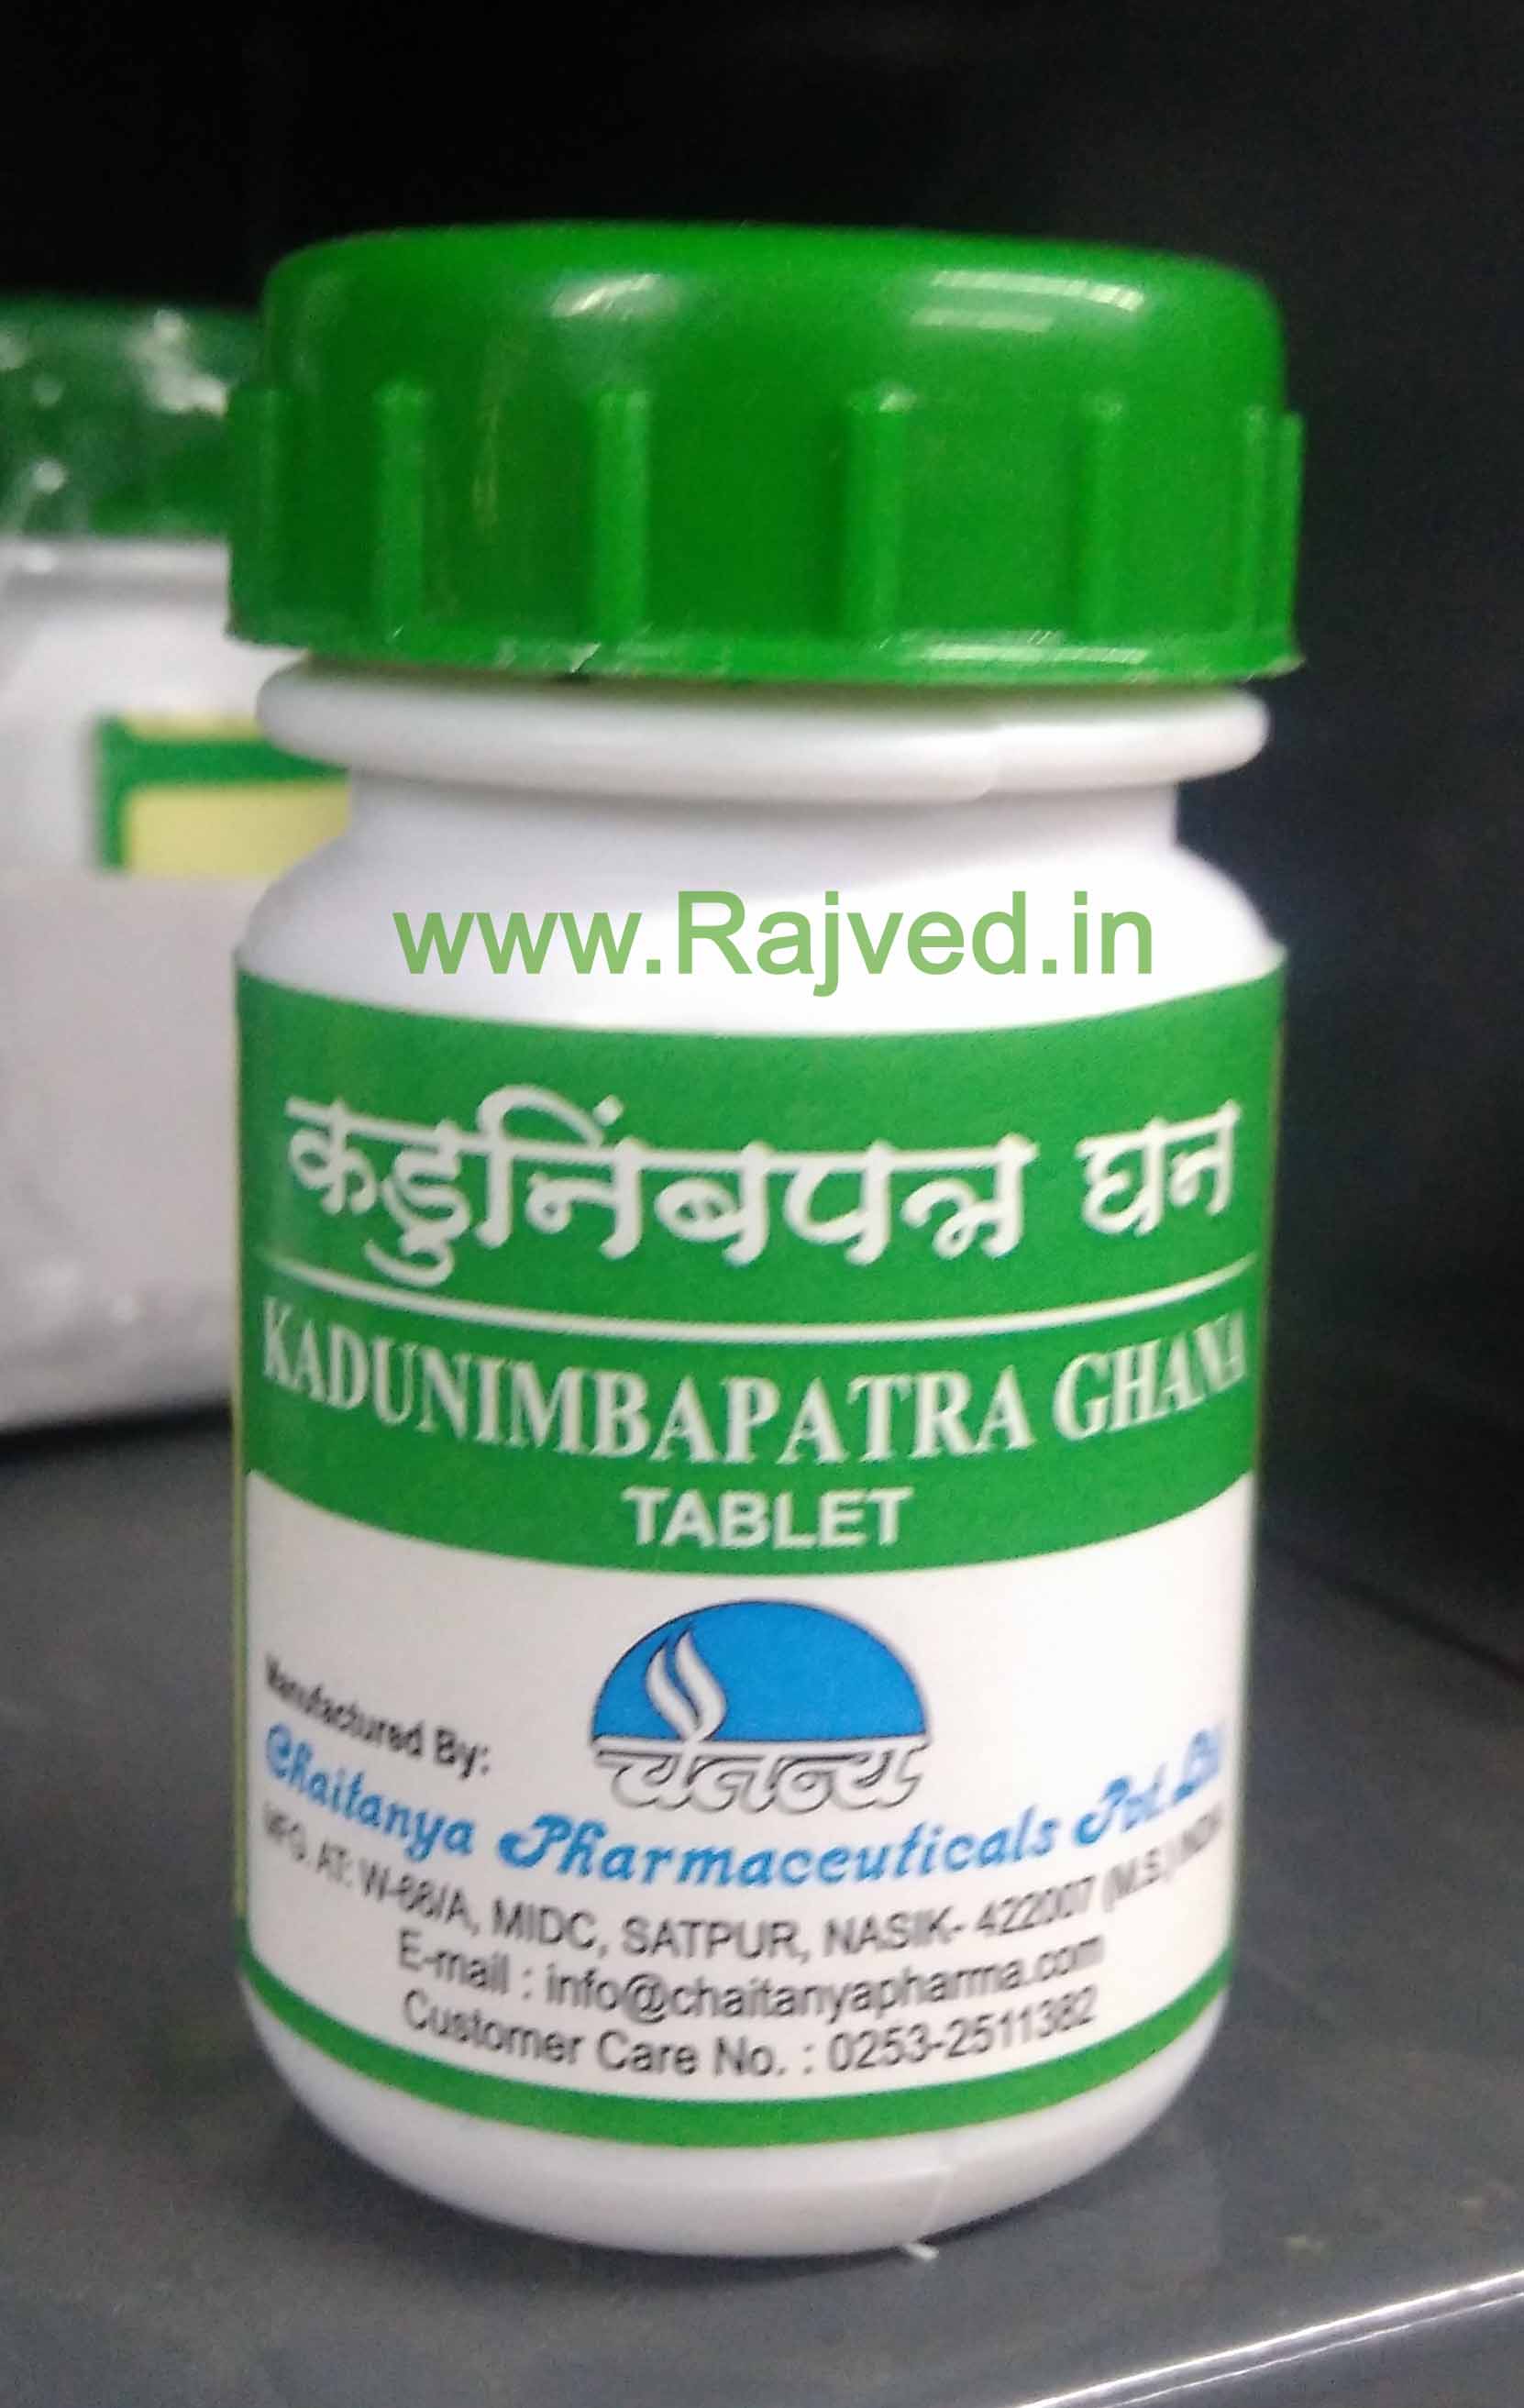 kadunimbapatra ghana 500 tab upto 20% off free shipping chaitanya pharmaceuticals